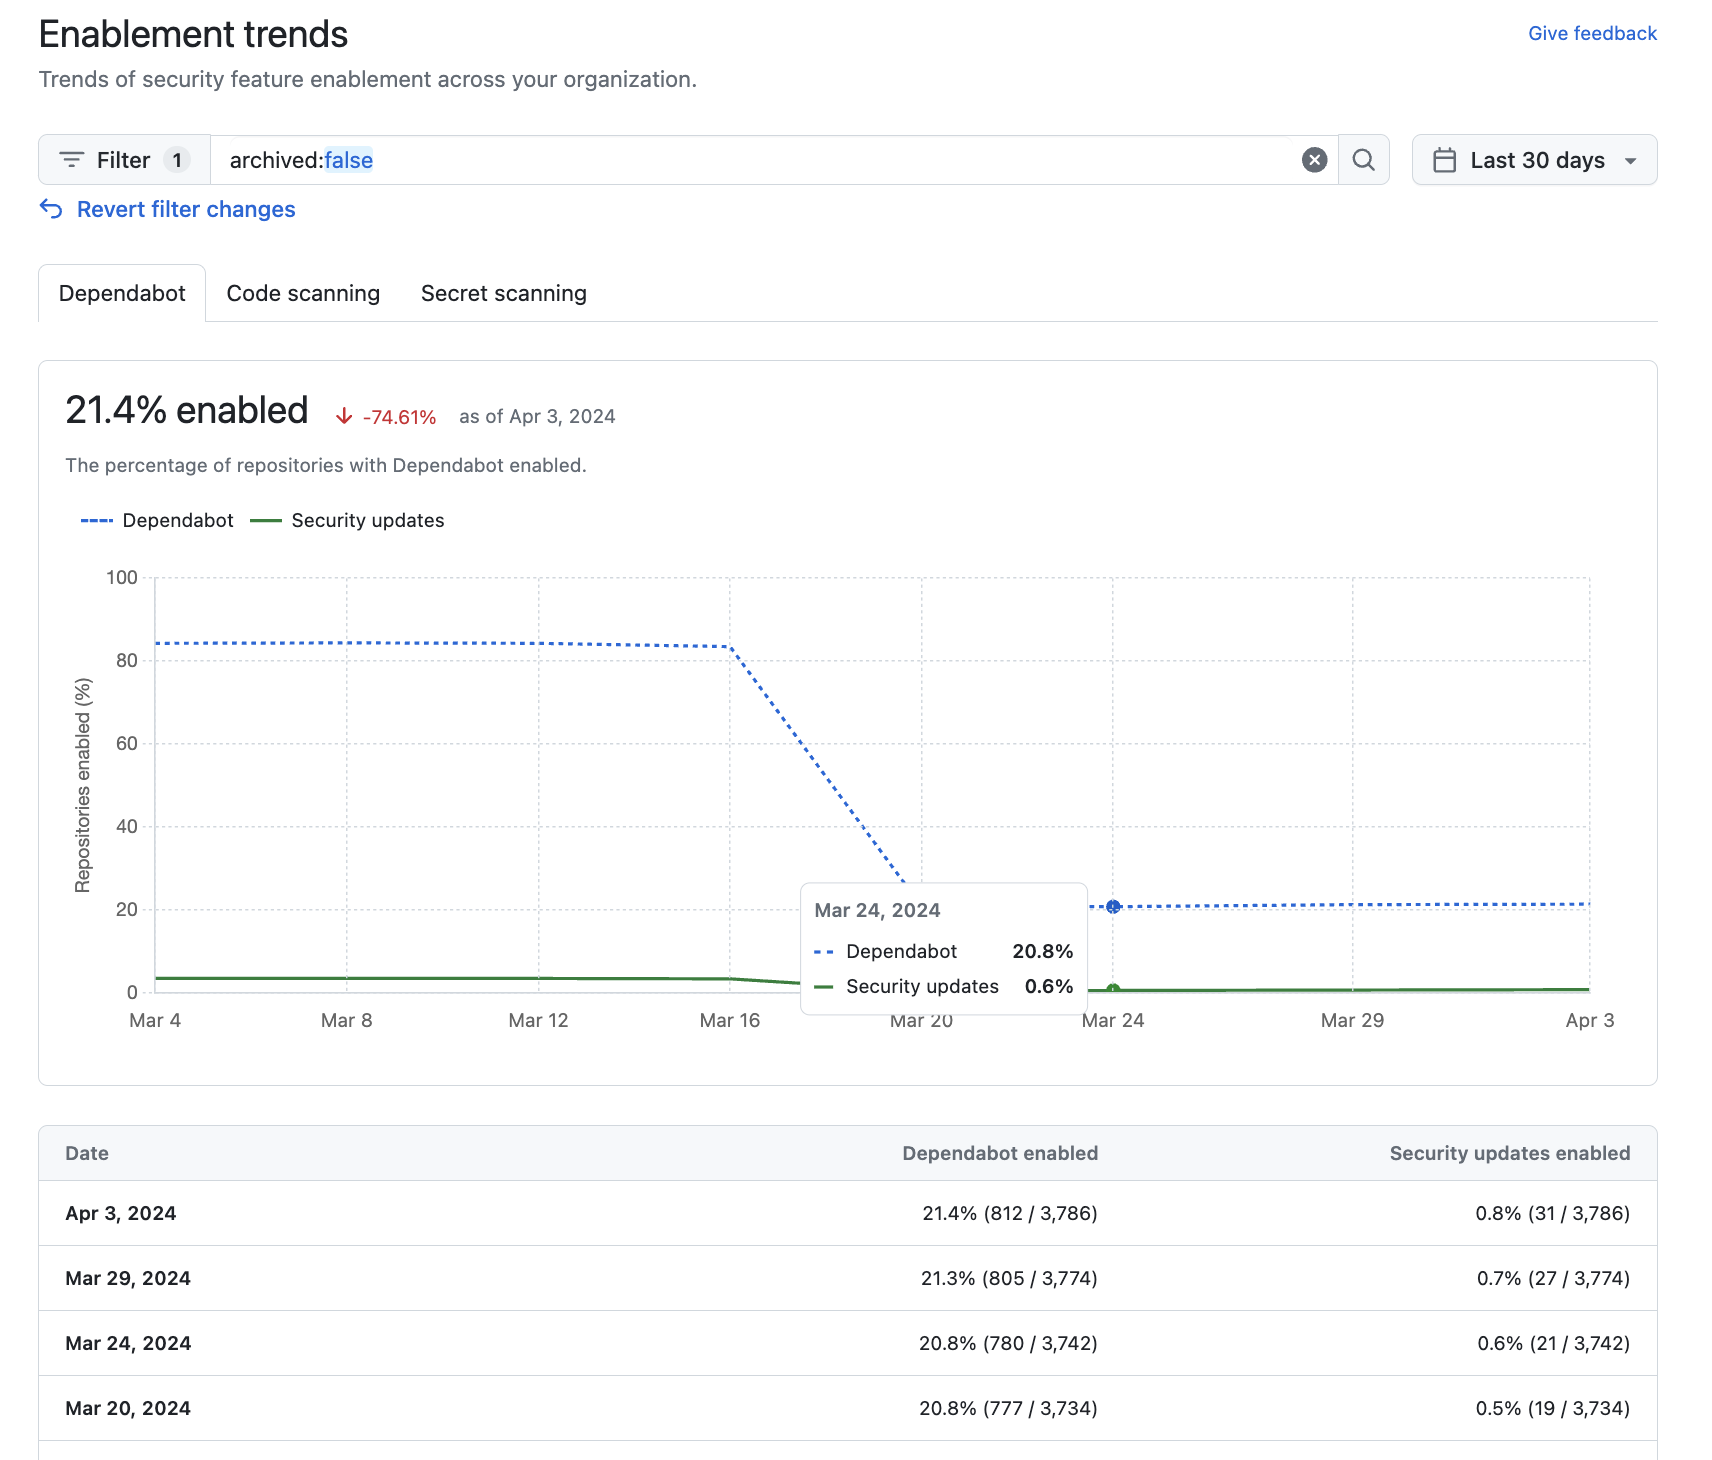 Captura de pantalla de la vista "Tendencias de habilitación" beta para una organización, que muestra el estado y las tendencias de Dependabot durante 30 días, con un filtro aplicado.